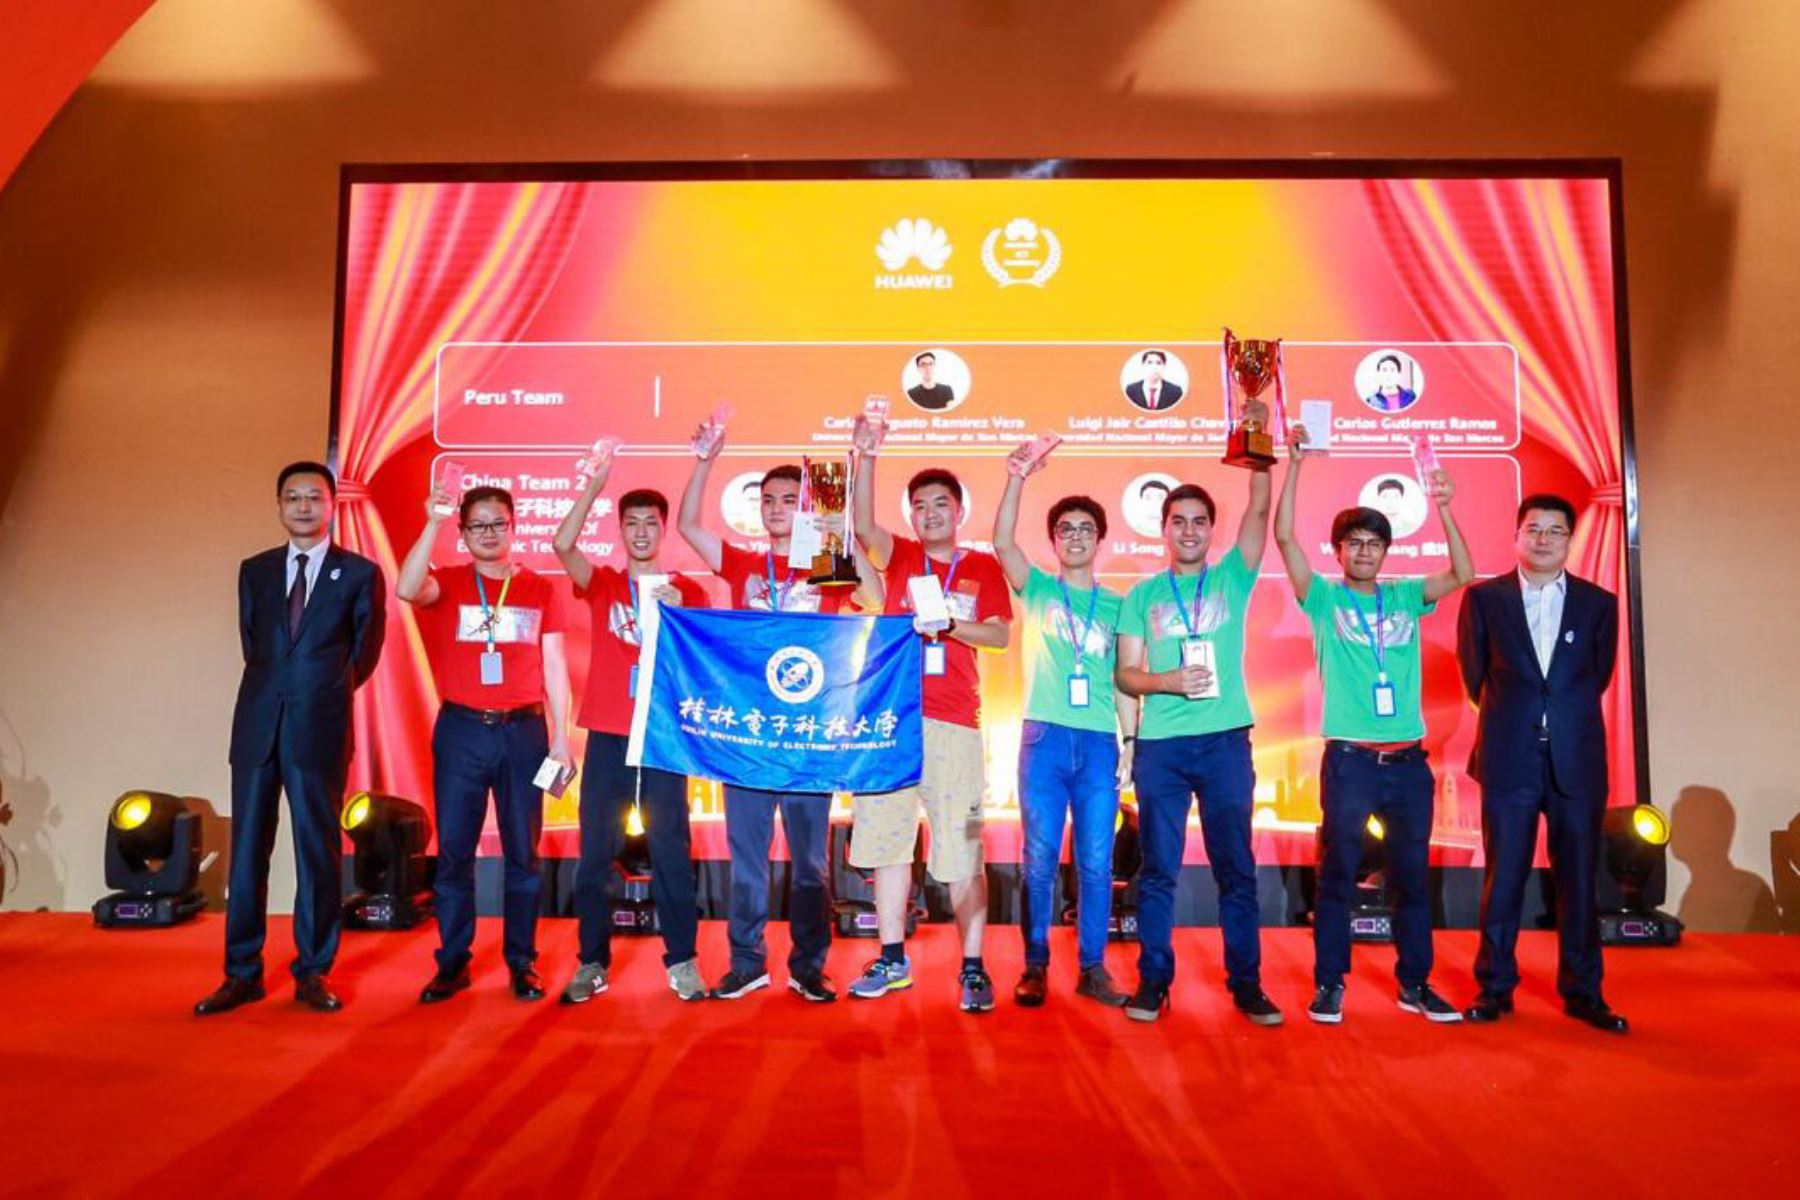 Estudiantes peruanos (con polos color verde) alzan la copa ganadora en su categoría. Foto: UNMSM